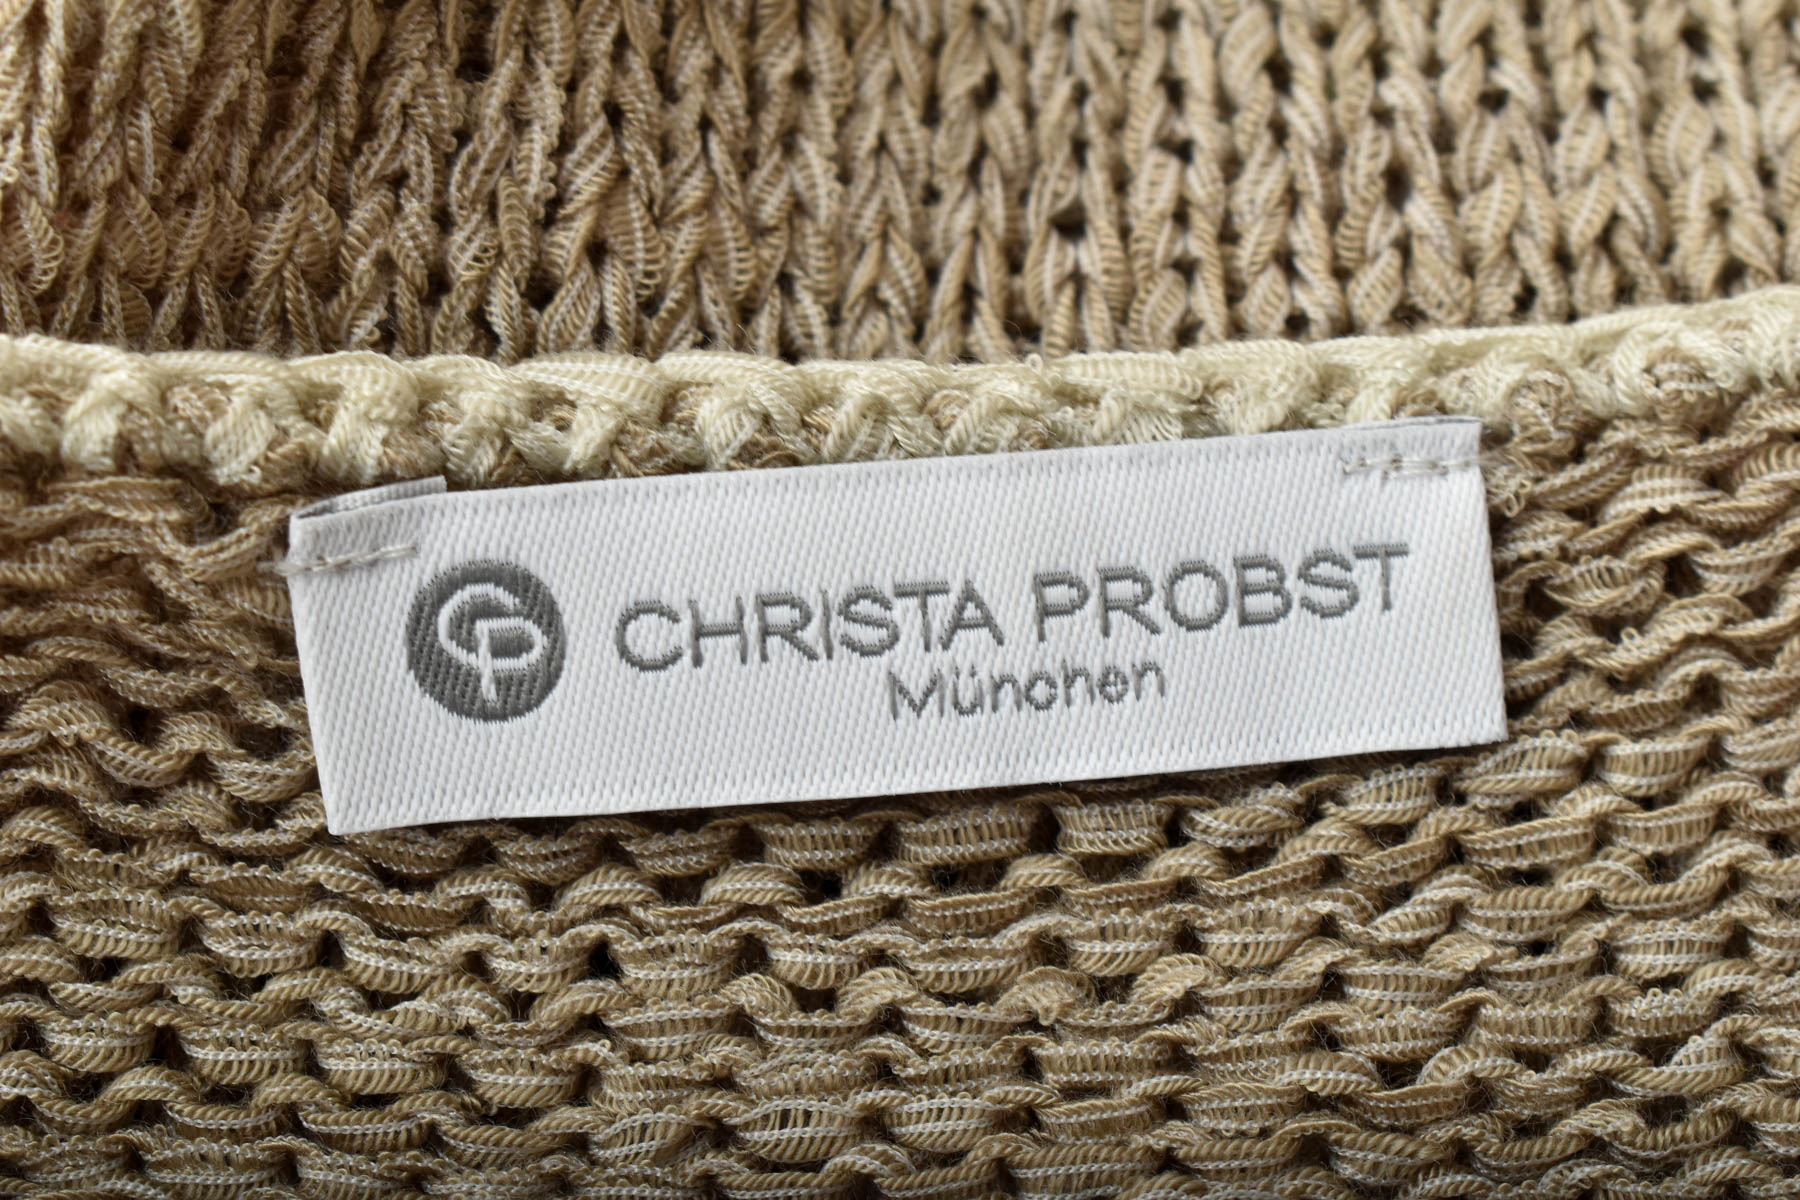 Γυναικείο πουλόβερ - Christa Probst - 2